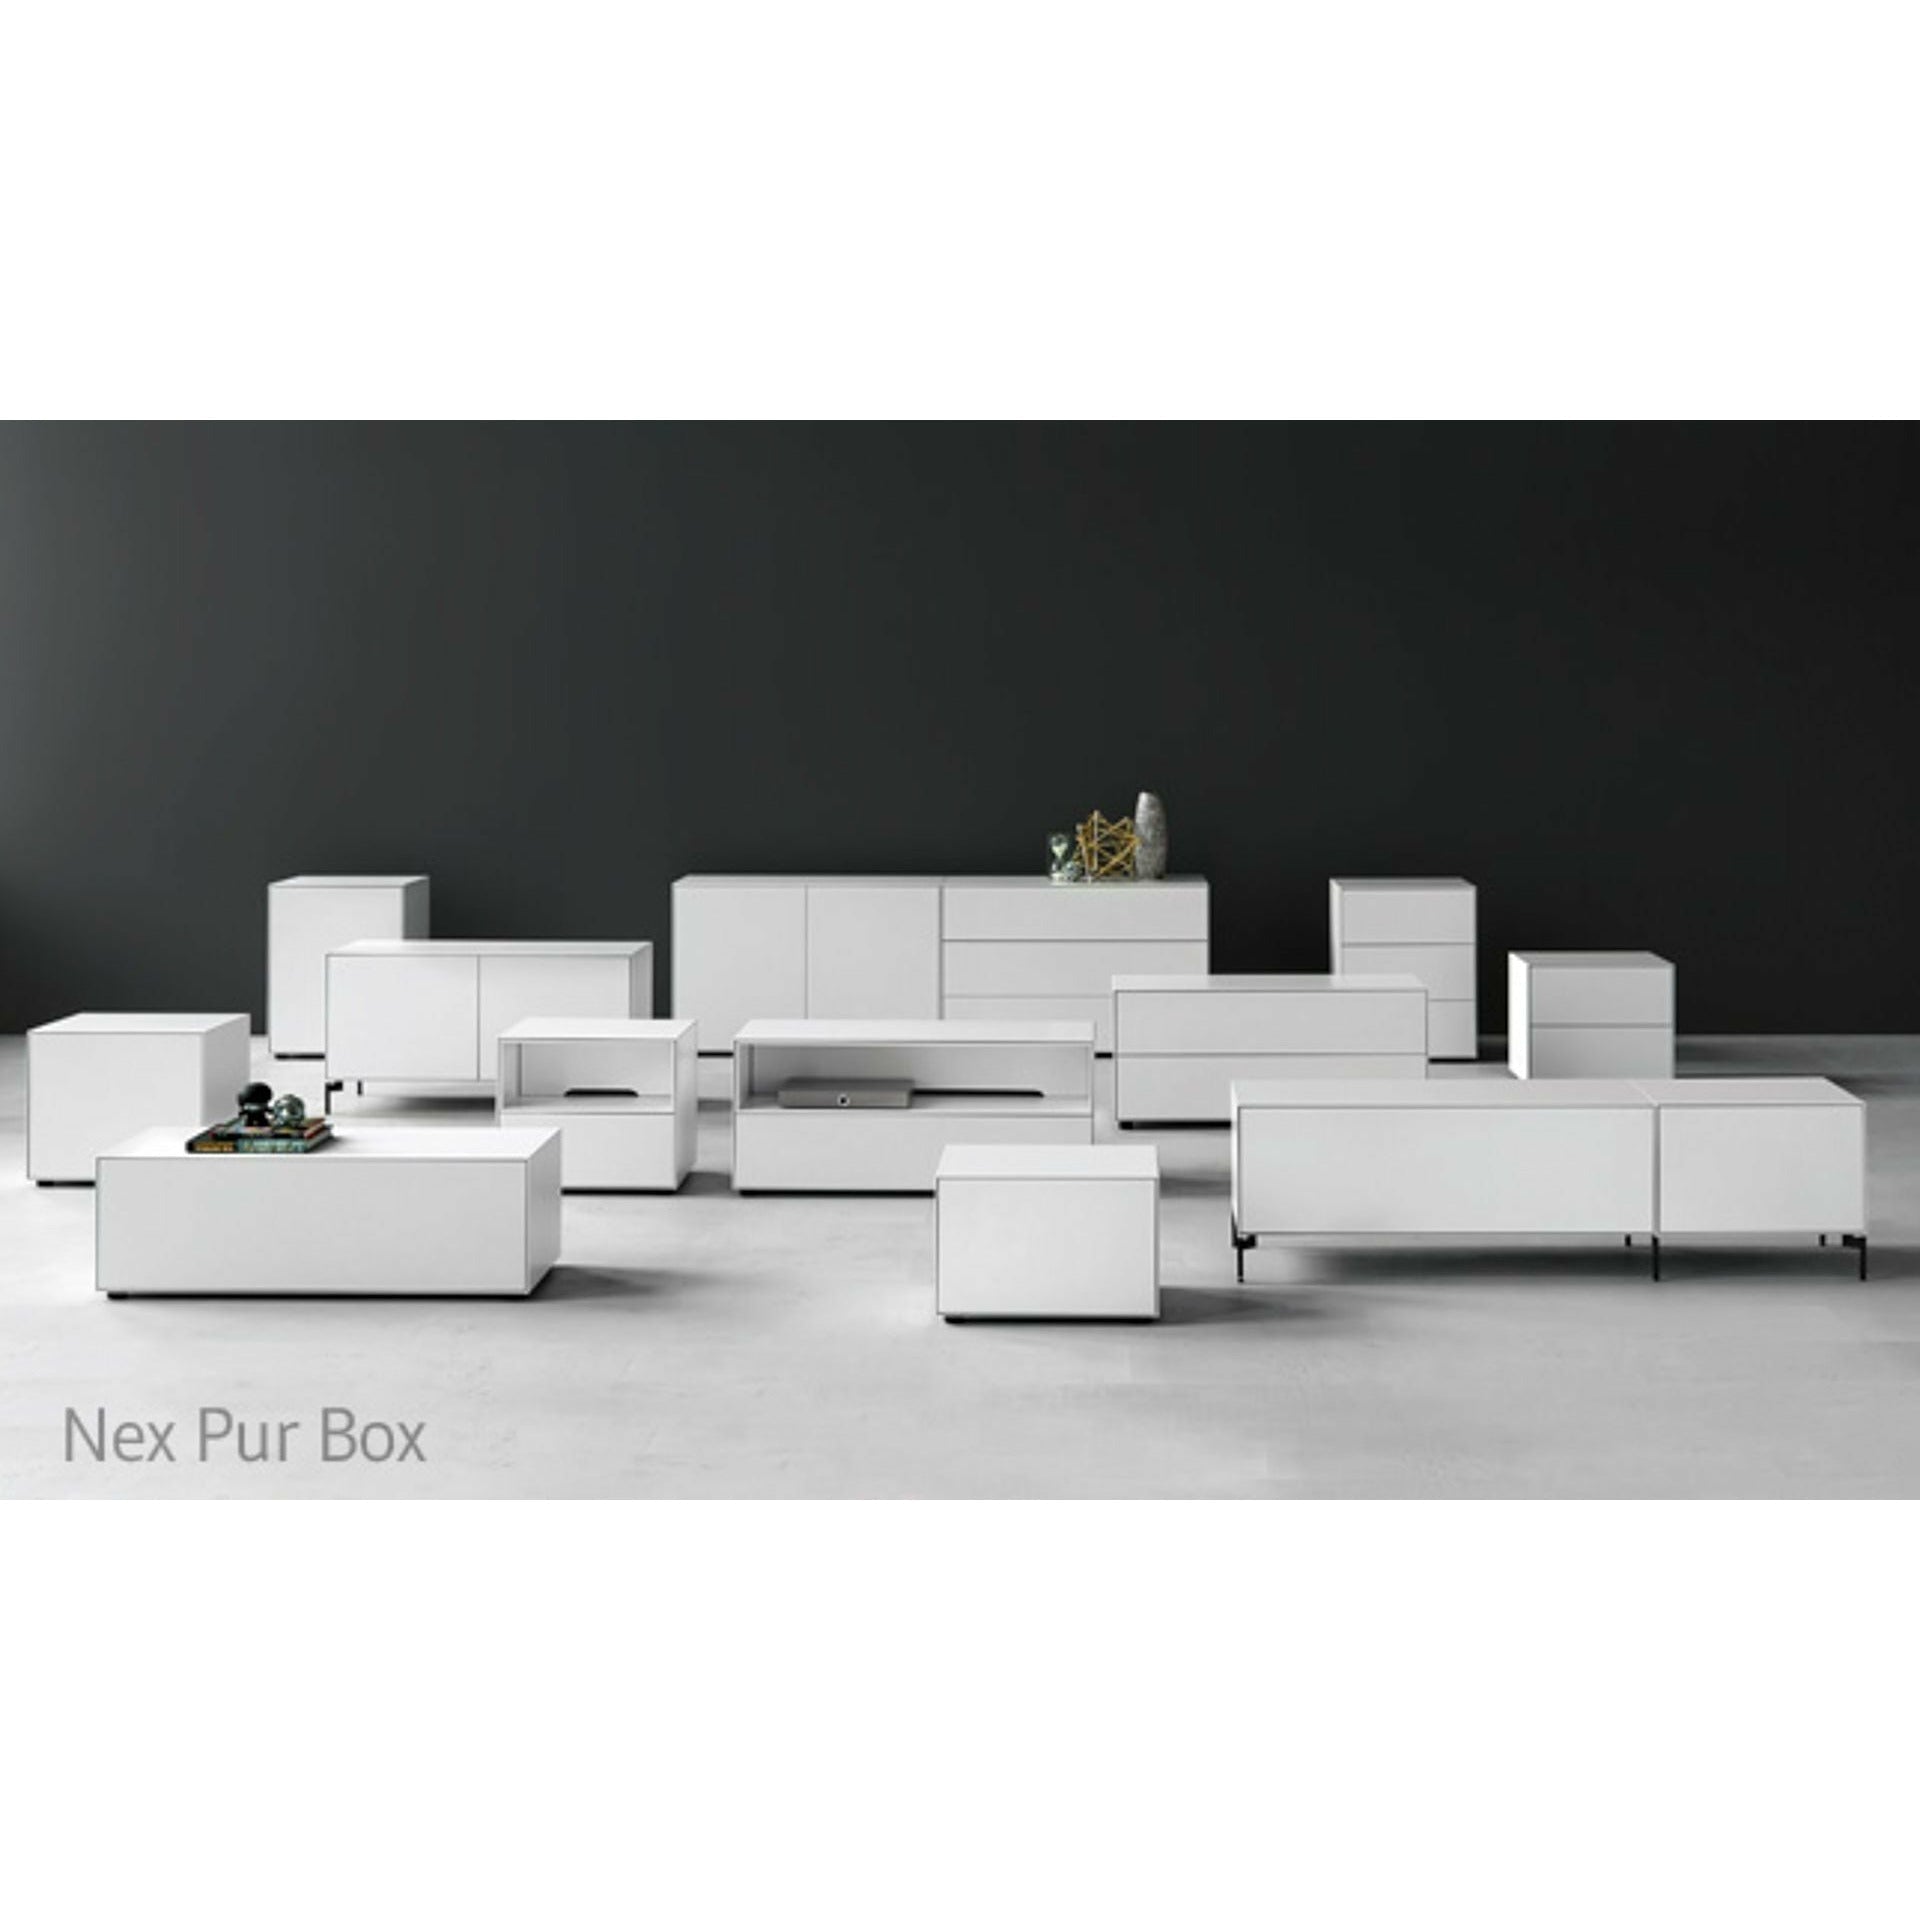 Piure Nex pur box deur hx w 50x180 cm, 1 plank